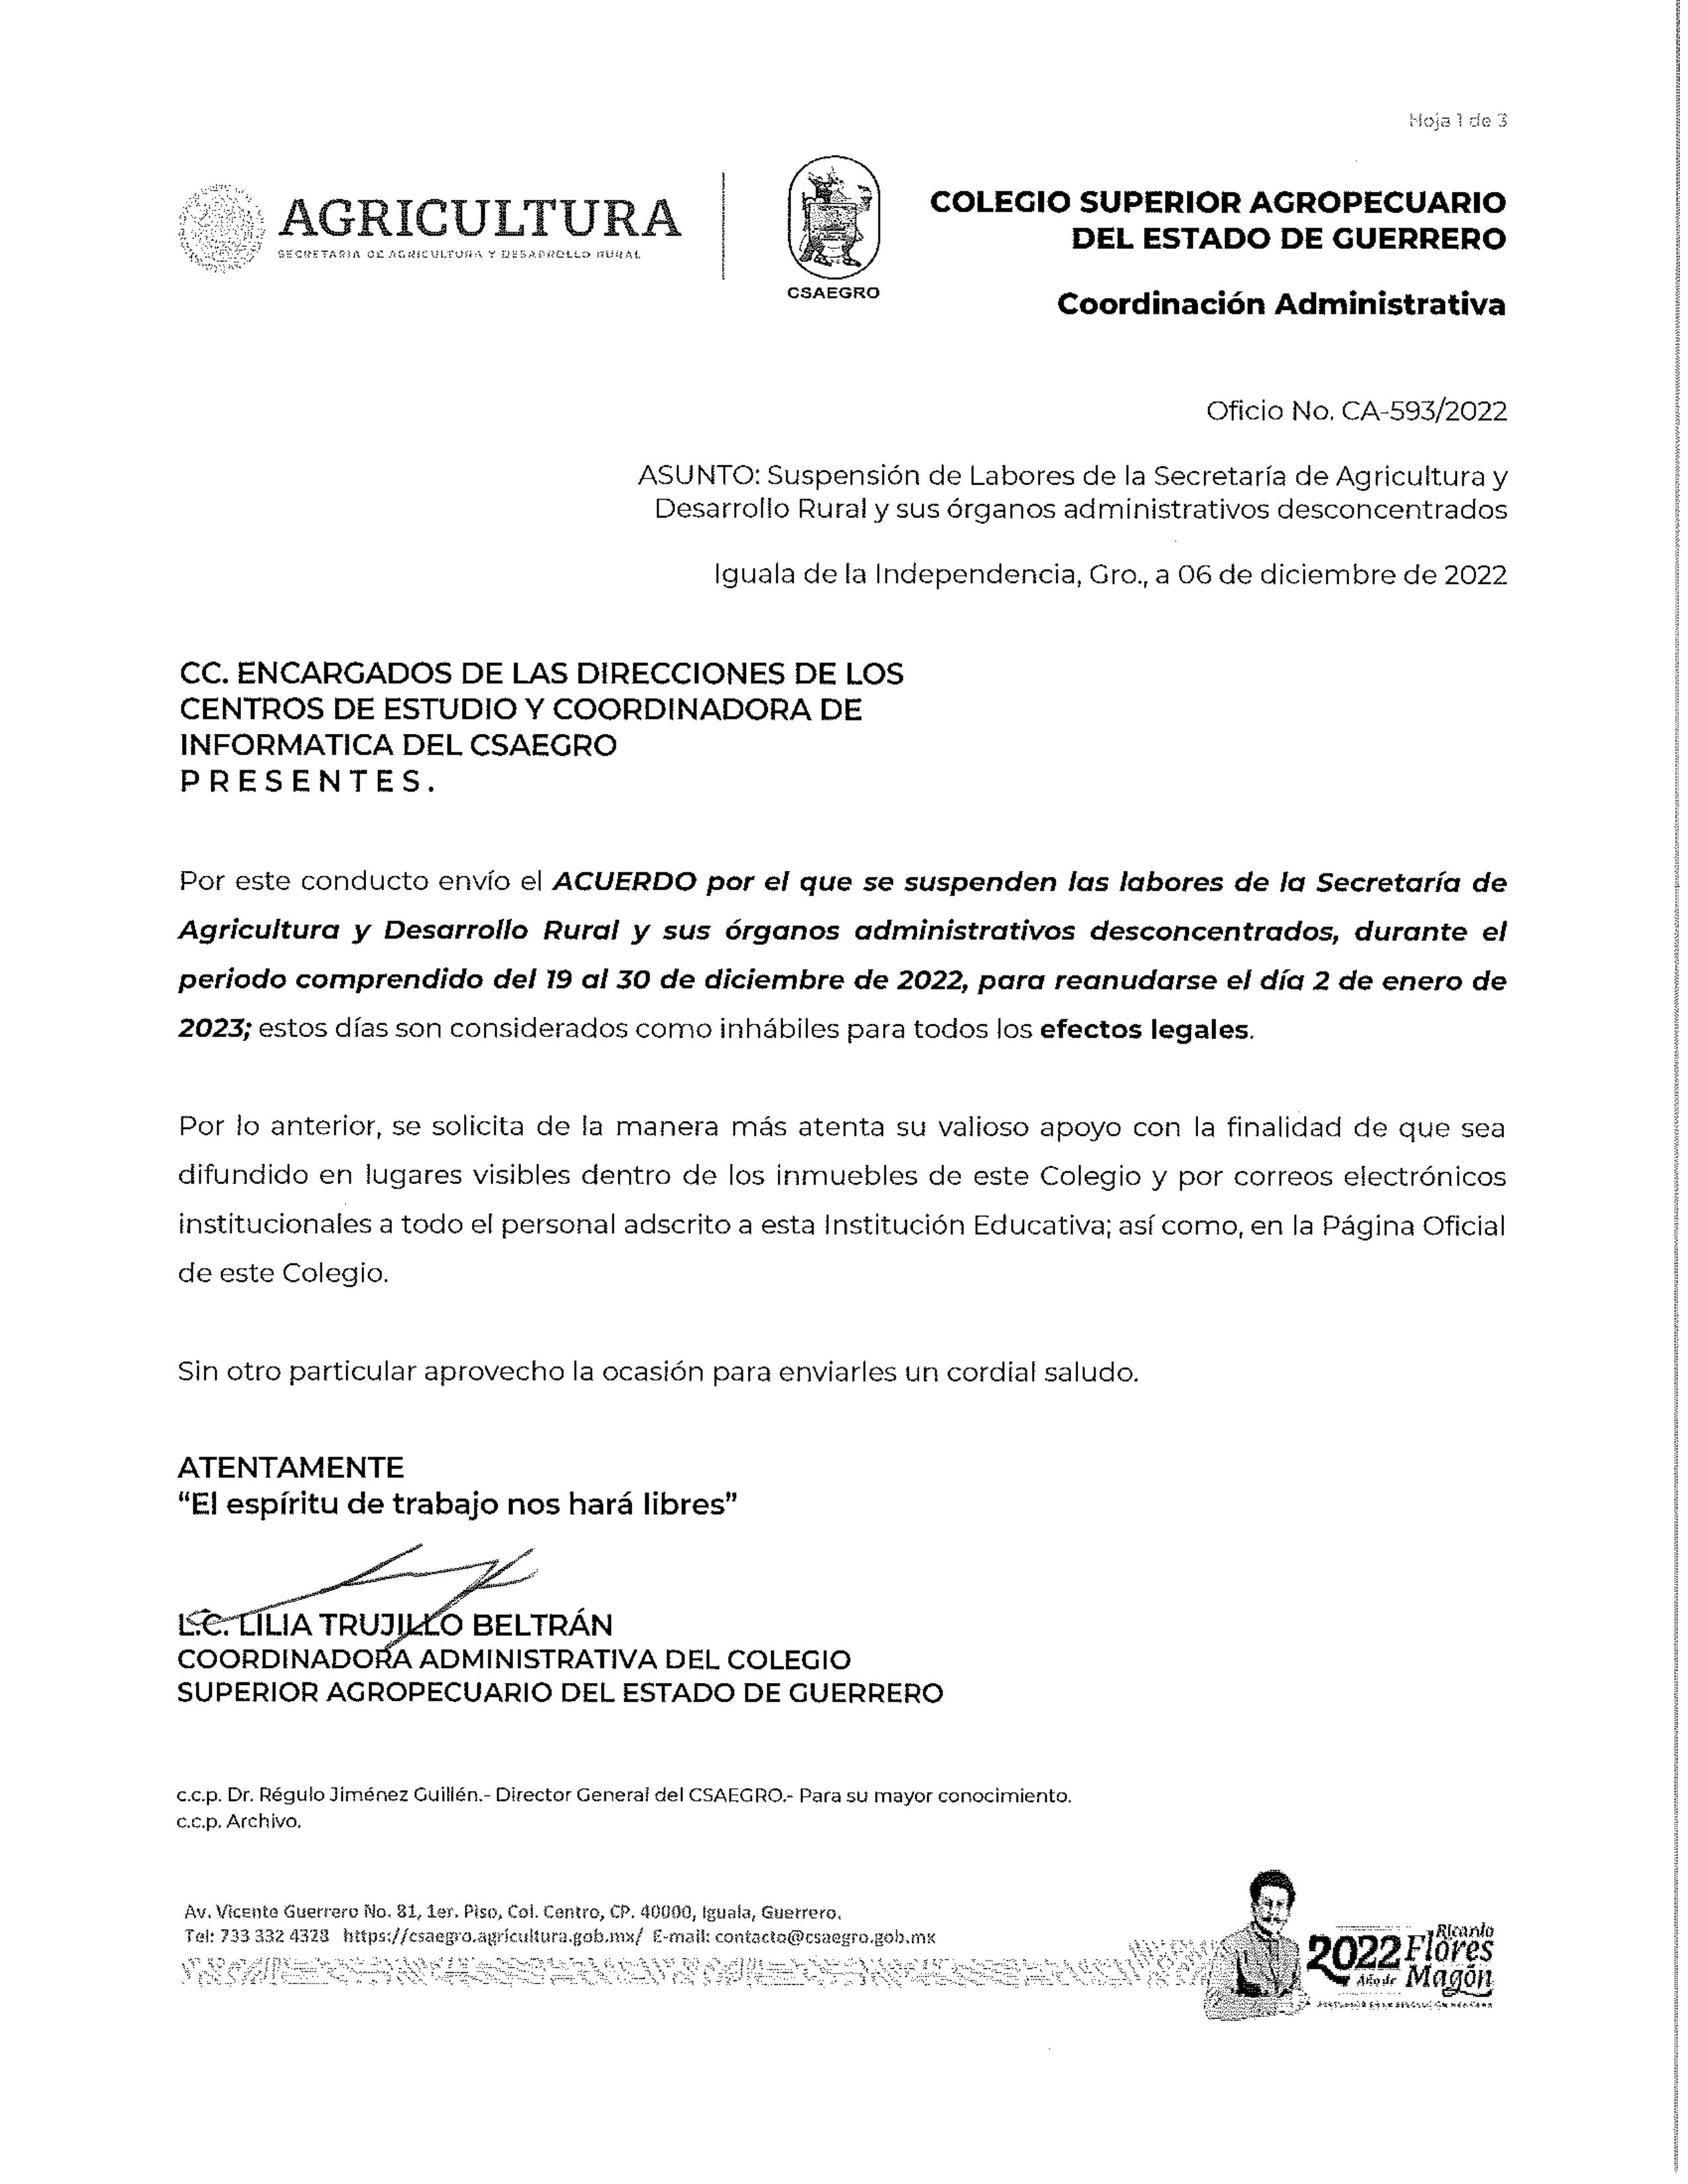 Oficio No.CA-593-2022 CEP, CET Y CI (Suspención de Labores de la Secretaria de Agricultura)